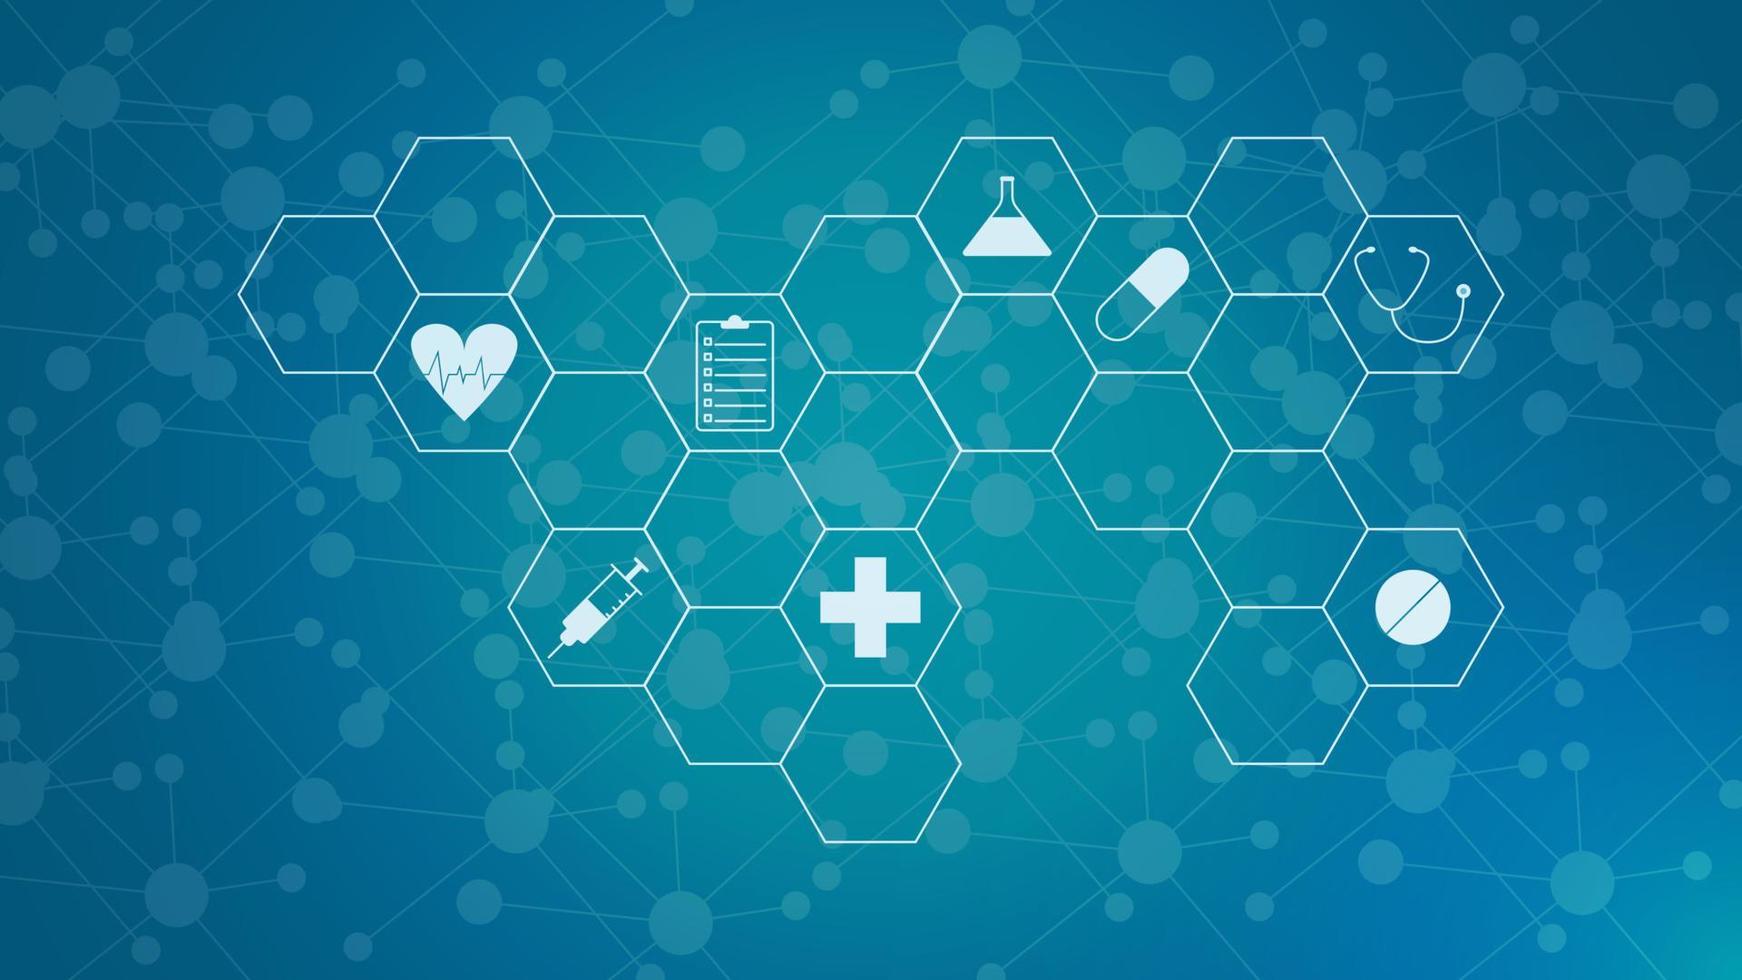 sjukvård och teknologi begrepp med ikoner. minimal bakgrund för farmaceutisk industri, hälsa vård företag, medicin, medicinsk forskning och vetenskap. vektor illustration.